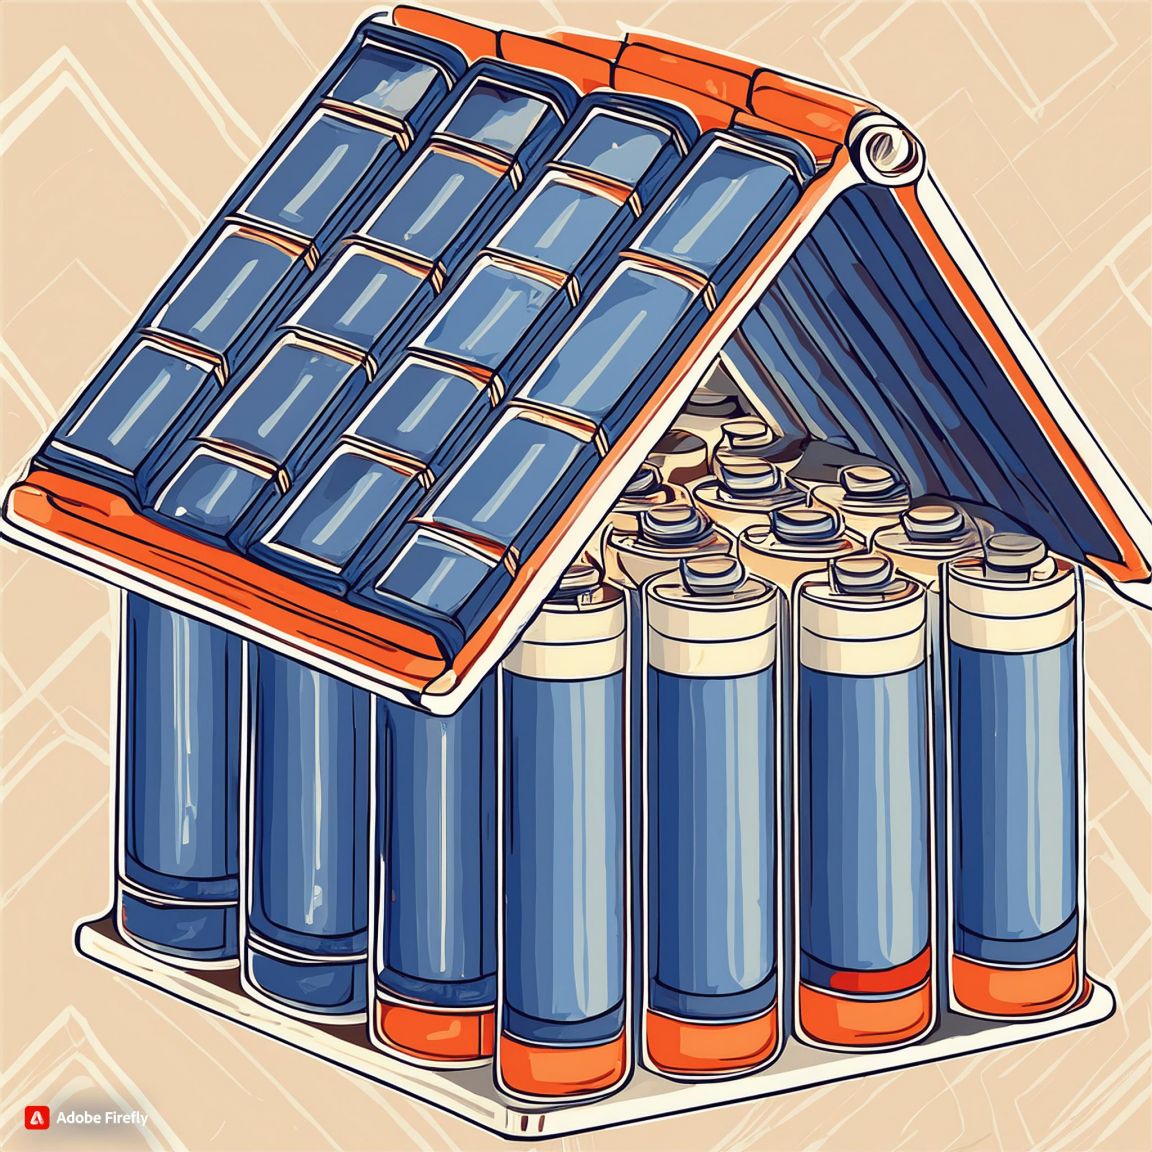 Firefly Ett hus med sadeltak av batterier for att illustrera batterilagring Transparent bakgrund B